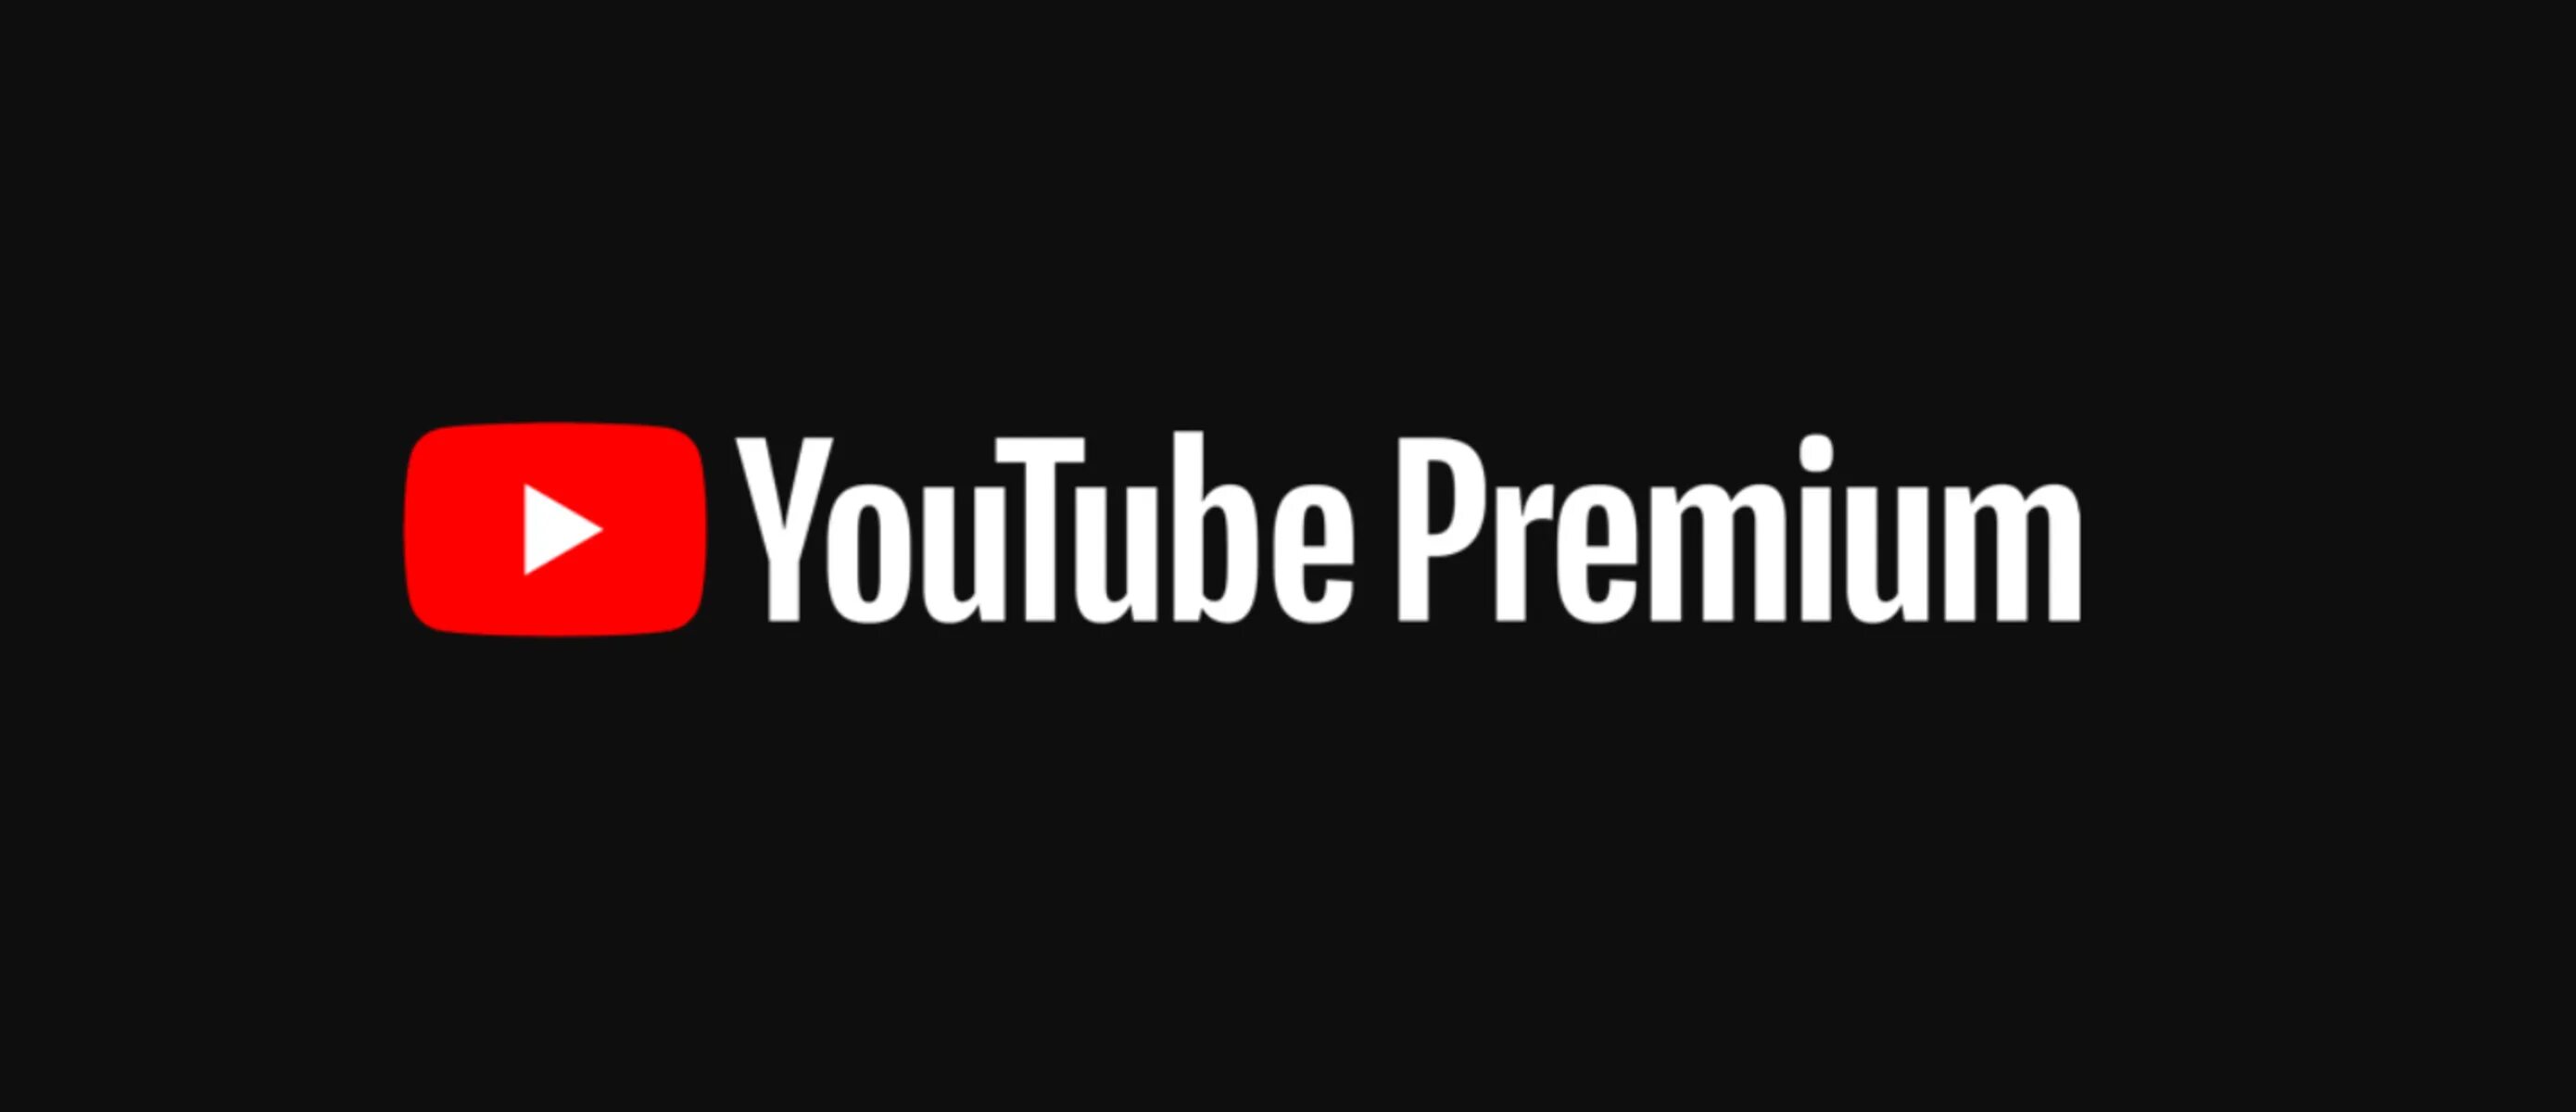 Youtube Premium. Ютуб премиум. Ютуб премиум логотип. Youtube фото. Ютуб премиум без рекламы на андроид последняя